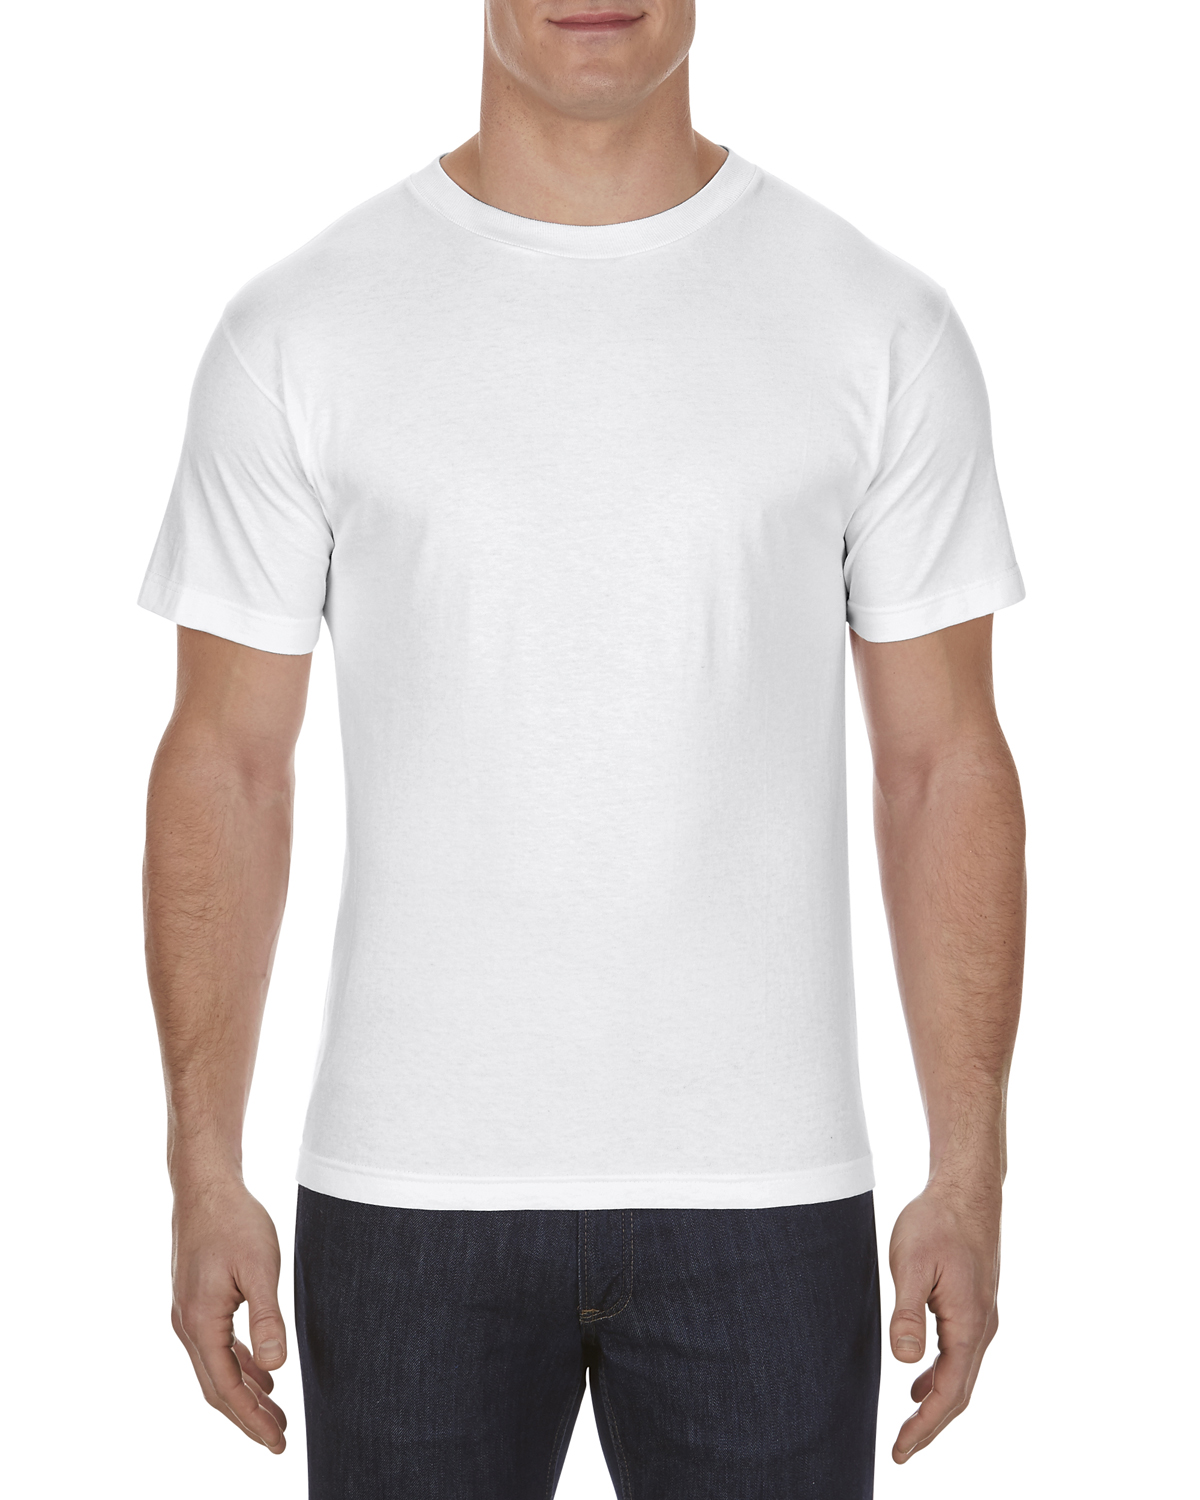 Alstyle AL1301 Adult 6.0 oz., 100% Cotton T Shirt - Low Price!